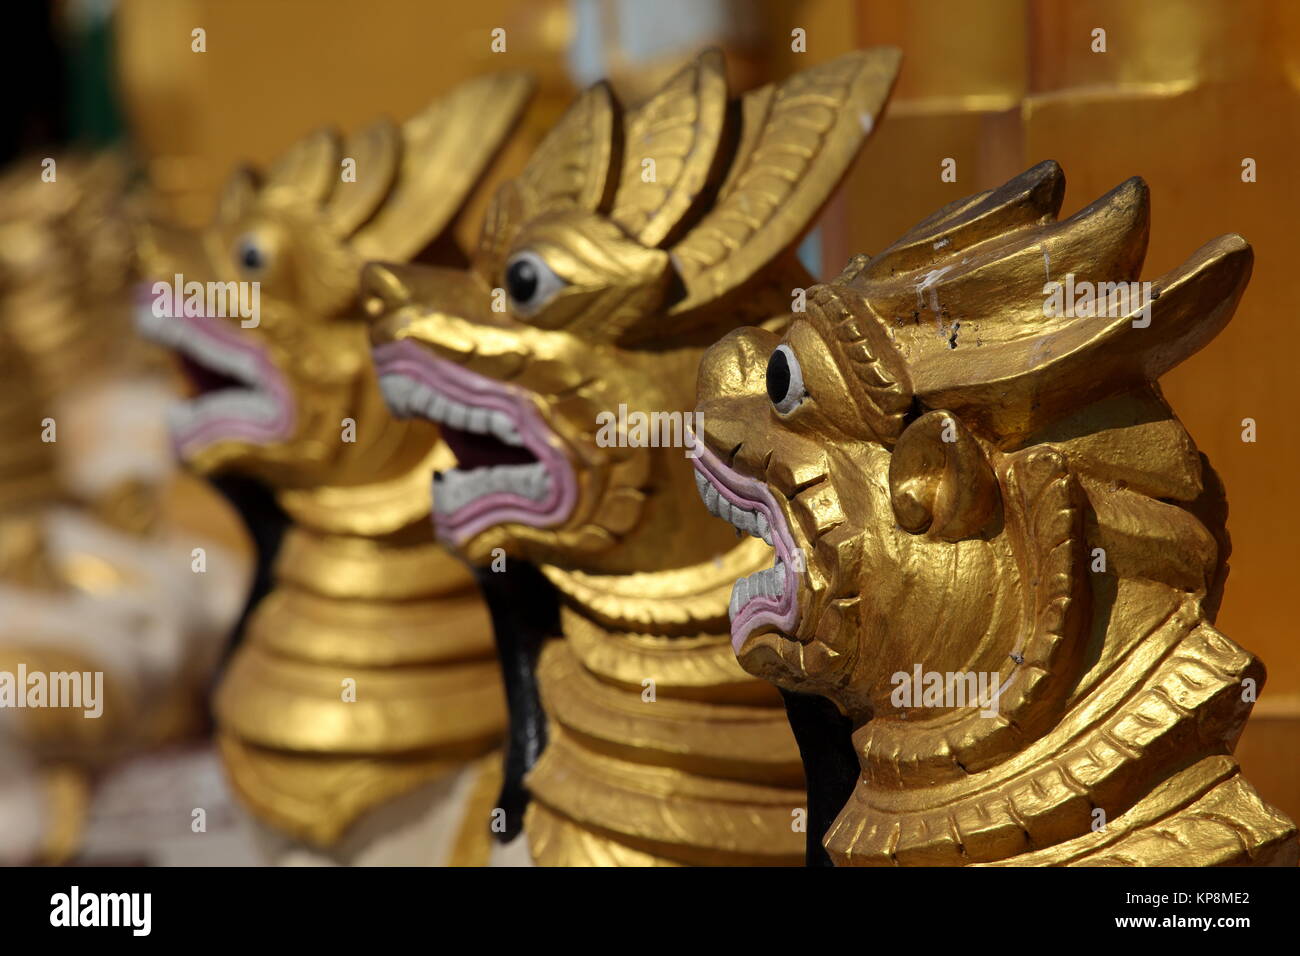 The Shwedagon Pagoda of Rangoon in Myanmar Stock Photo